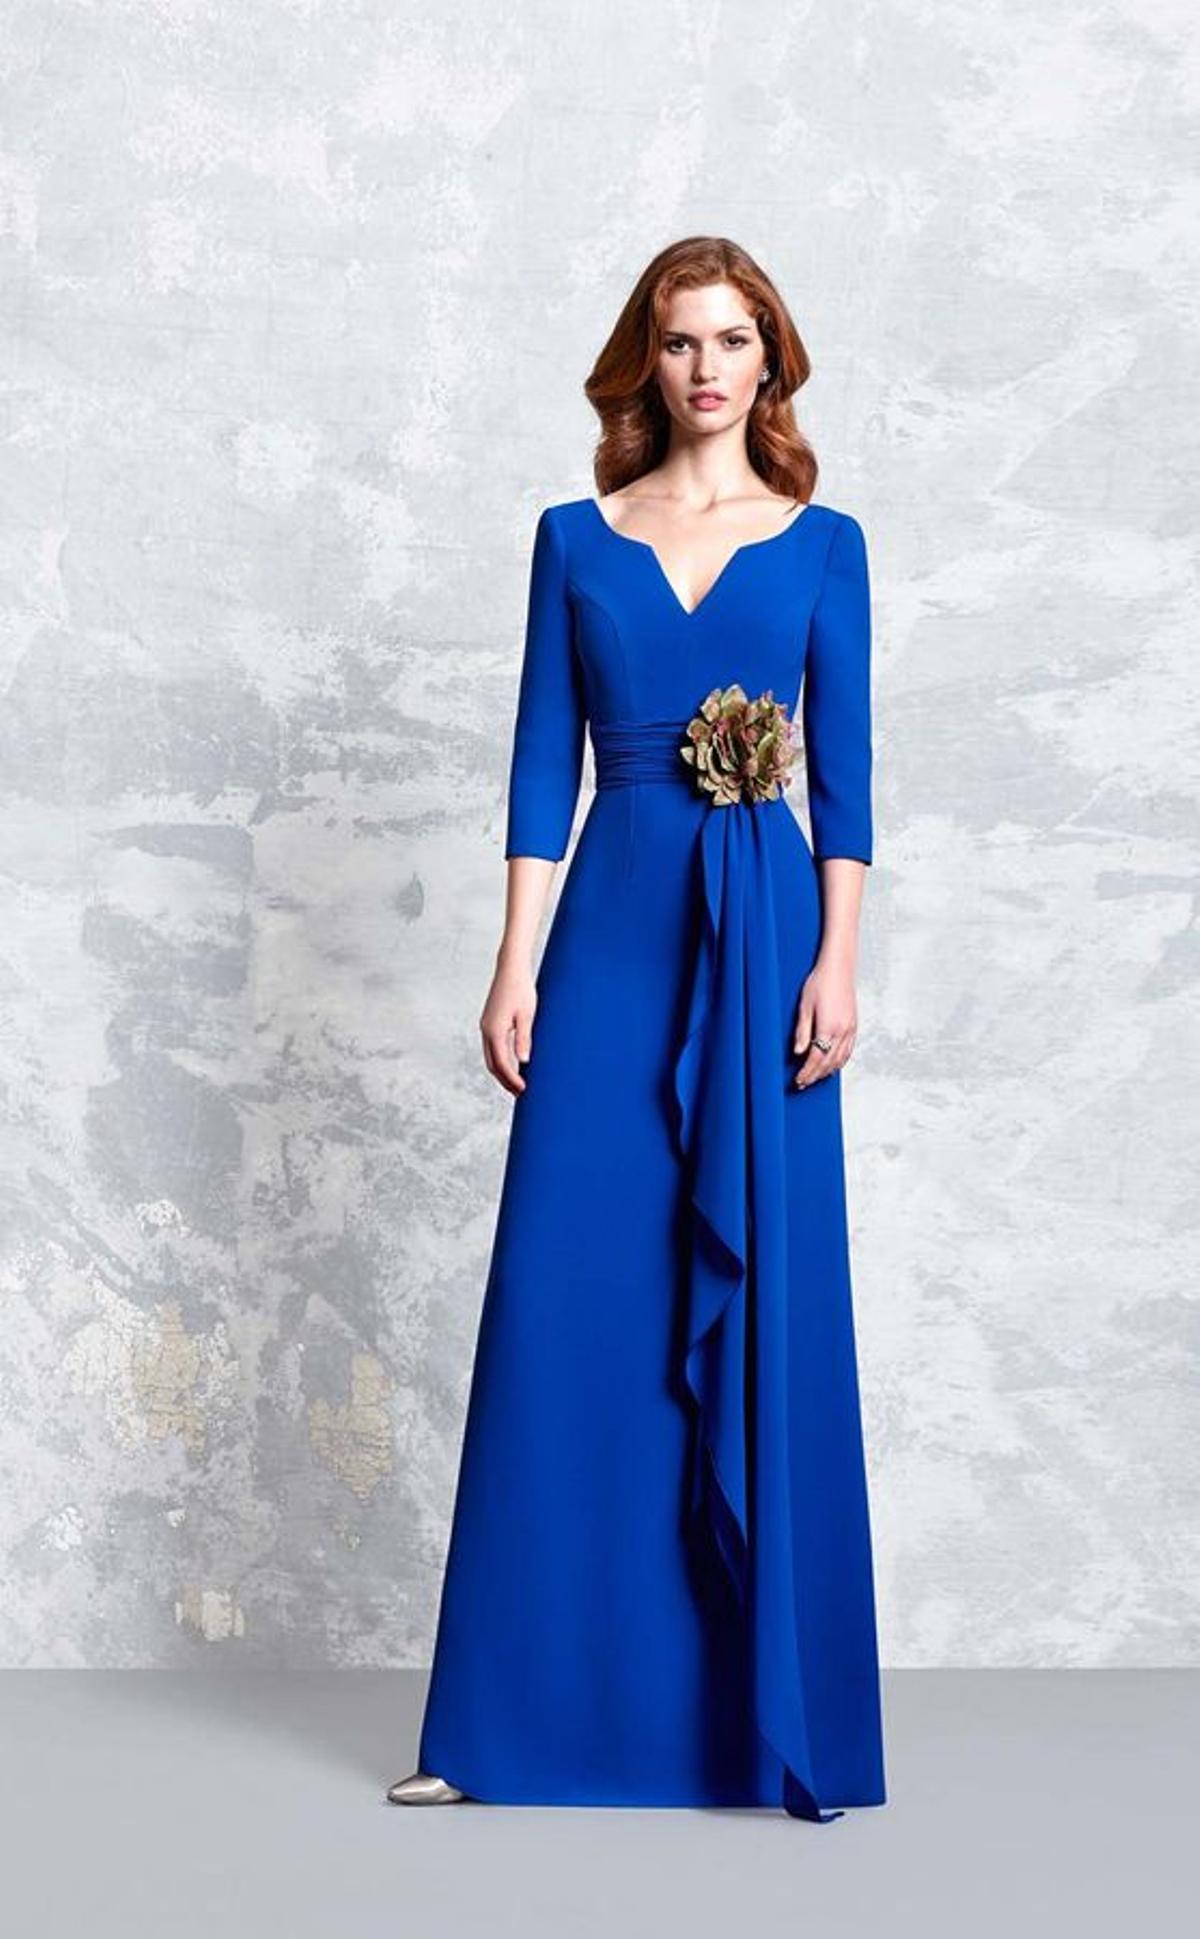 Colores top para vestidos de fiesta: azul eléctrico